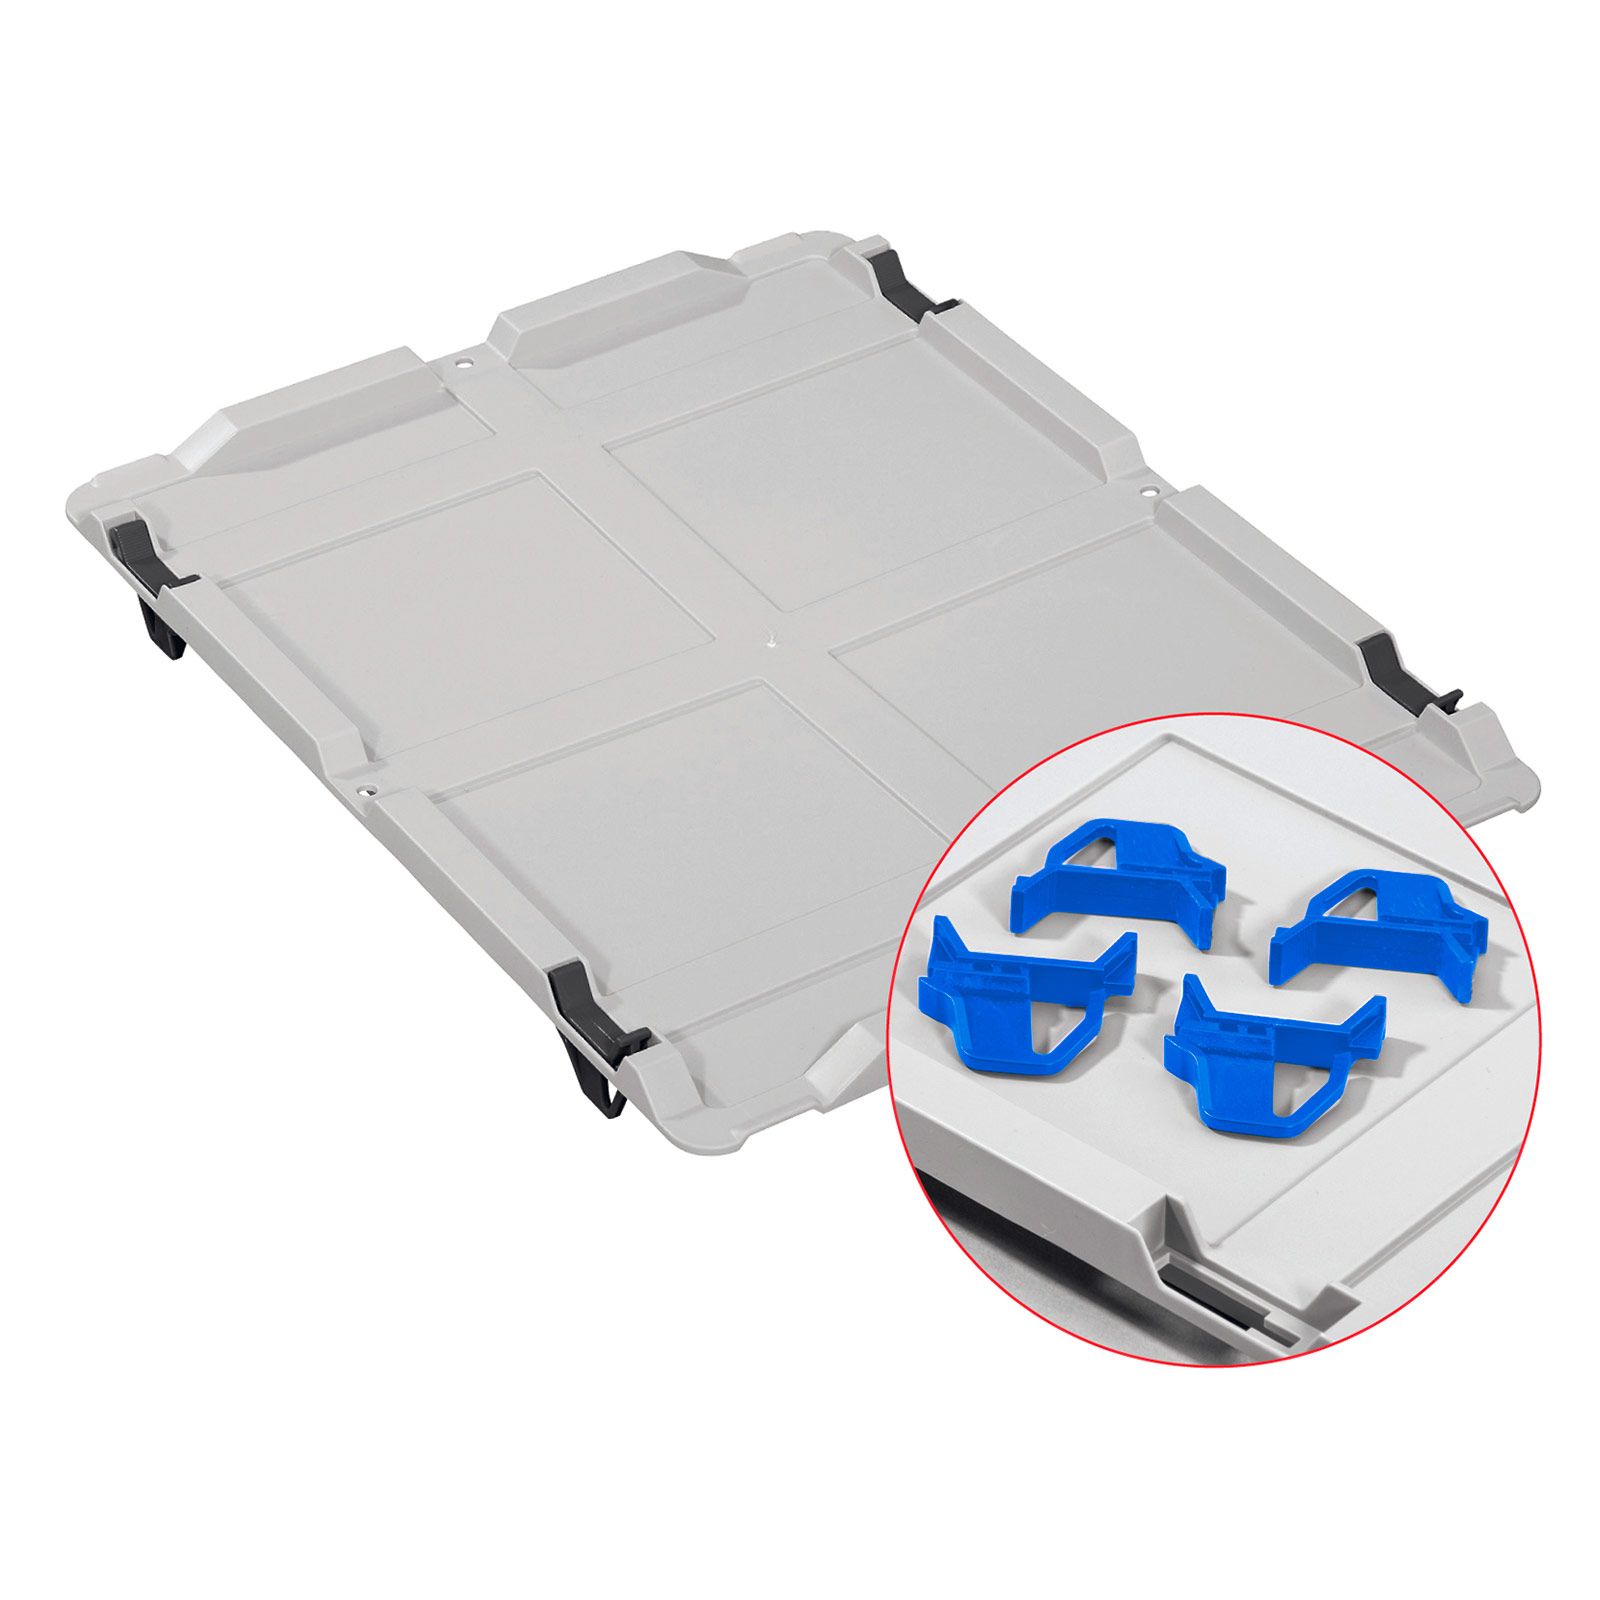 Auflagedeckel Set Eurobox NextGen mit 4 blauen Schiebeschnappverschlüssen | BxT 40x60cm | Eurobehälter, Transportbox, Transportbehälter, Stapelbehälter